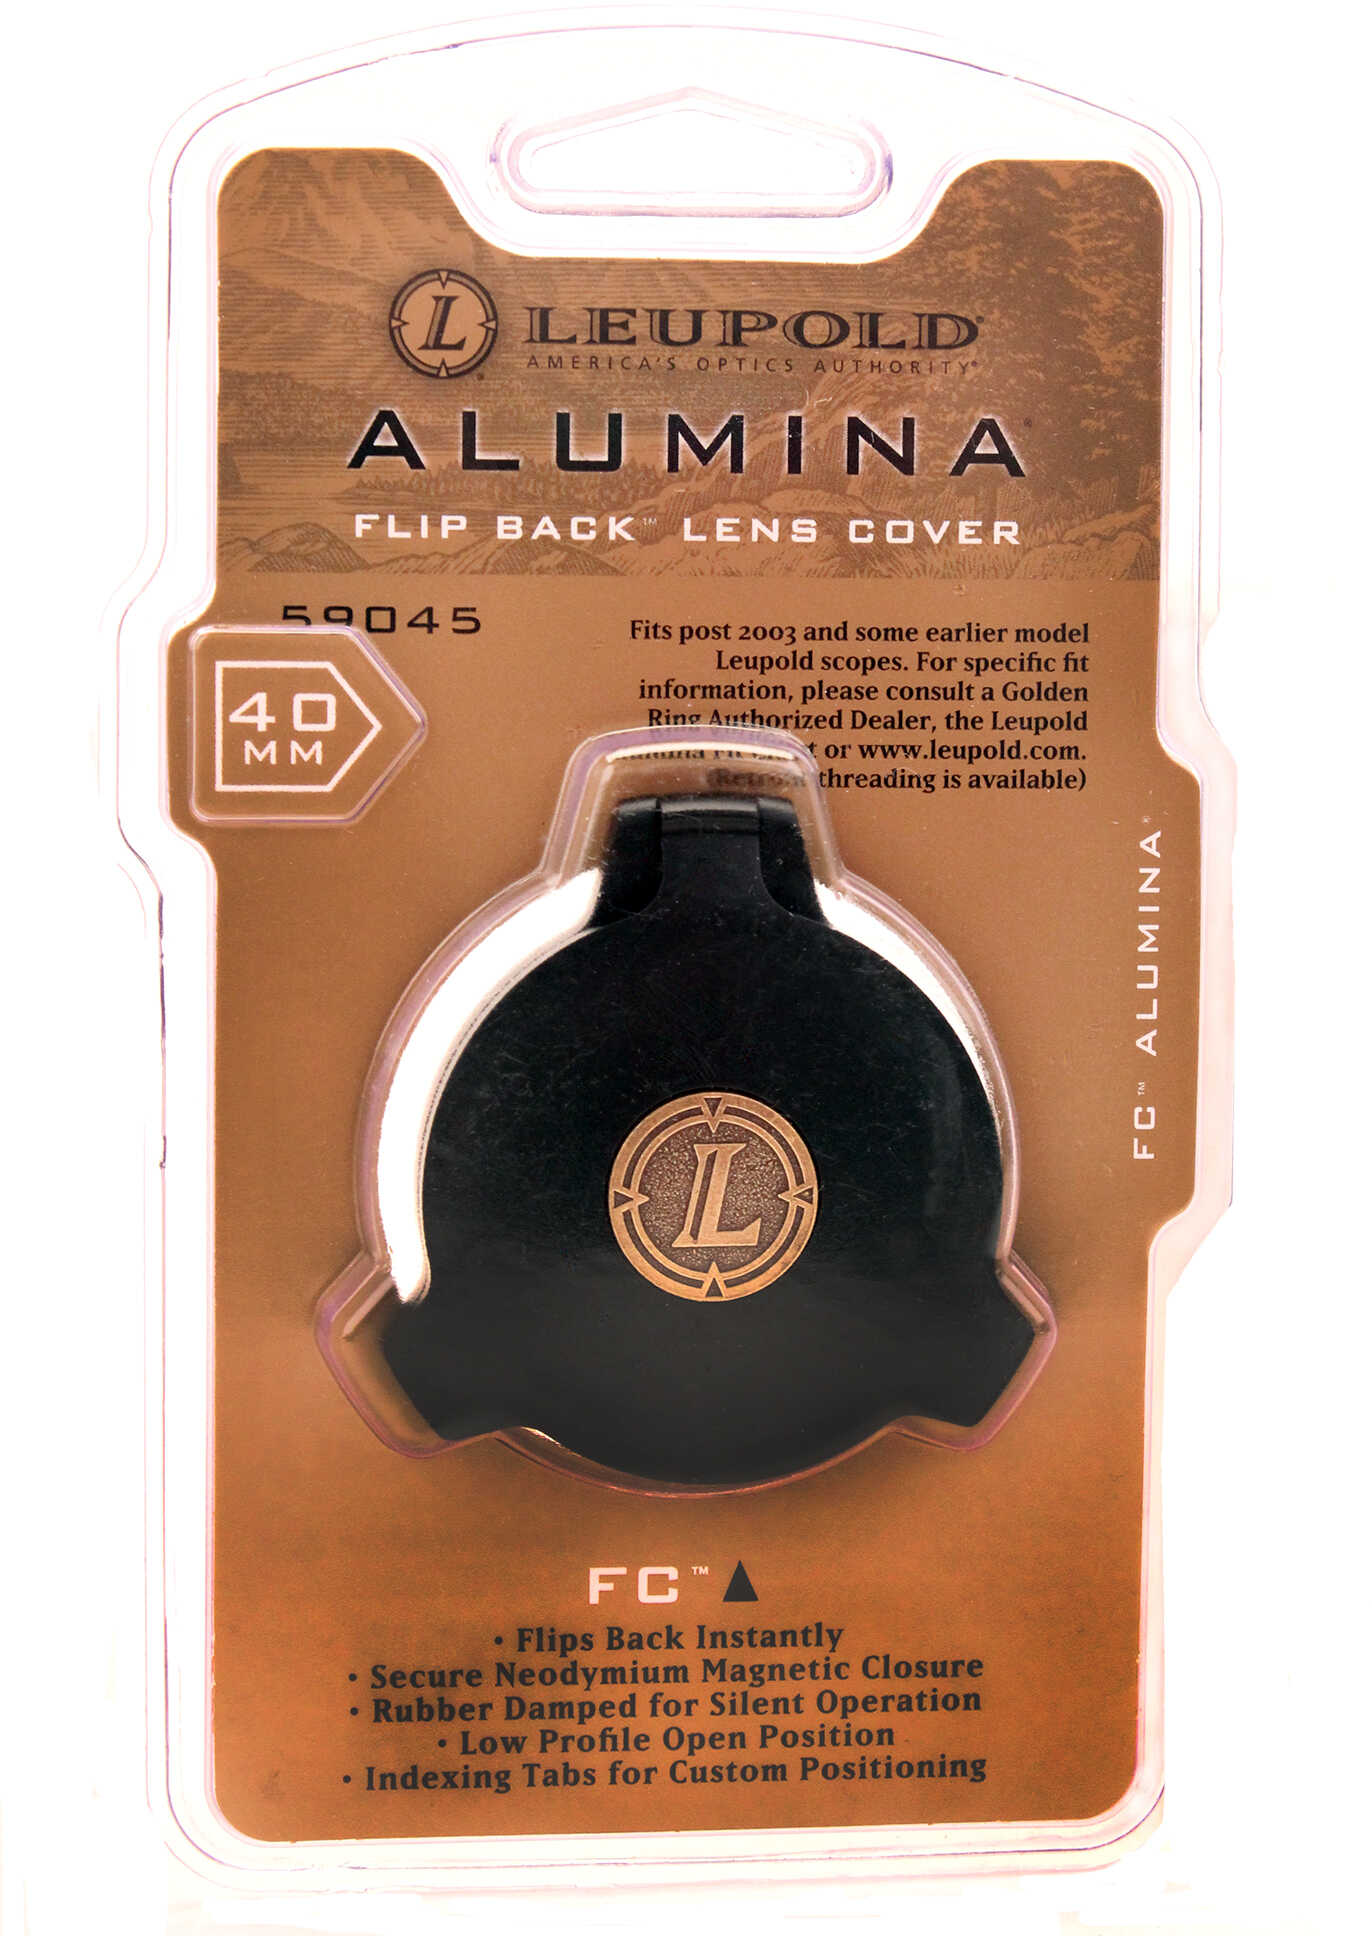 Leupold Lens Cover Alumina 40MM FLP Bk Flip Back Objective 59045